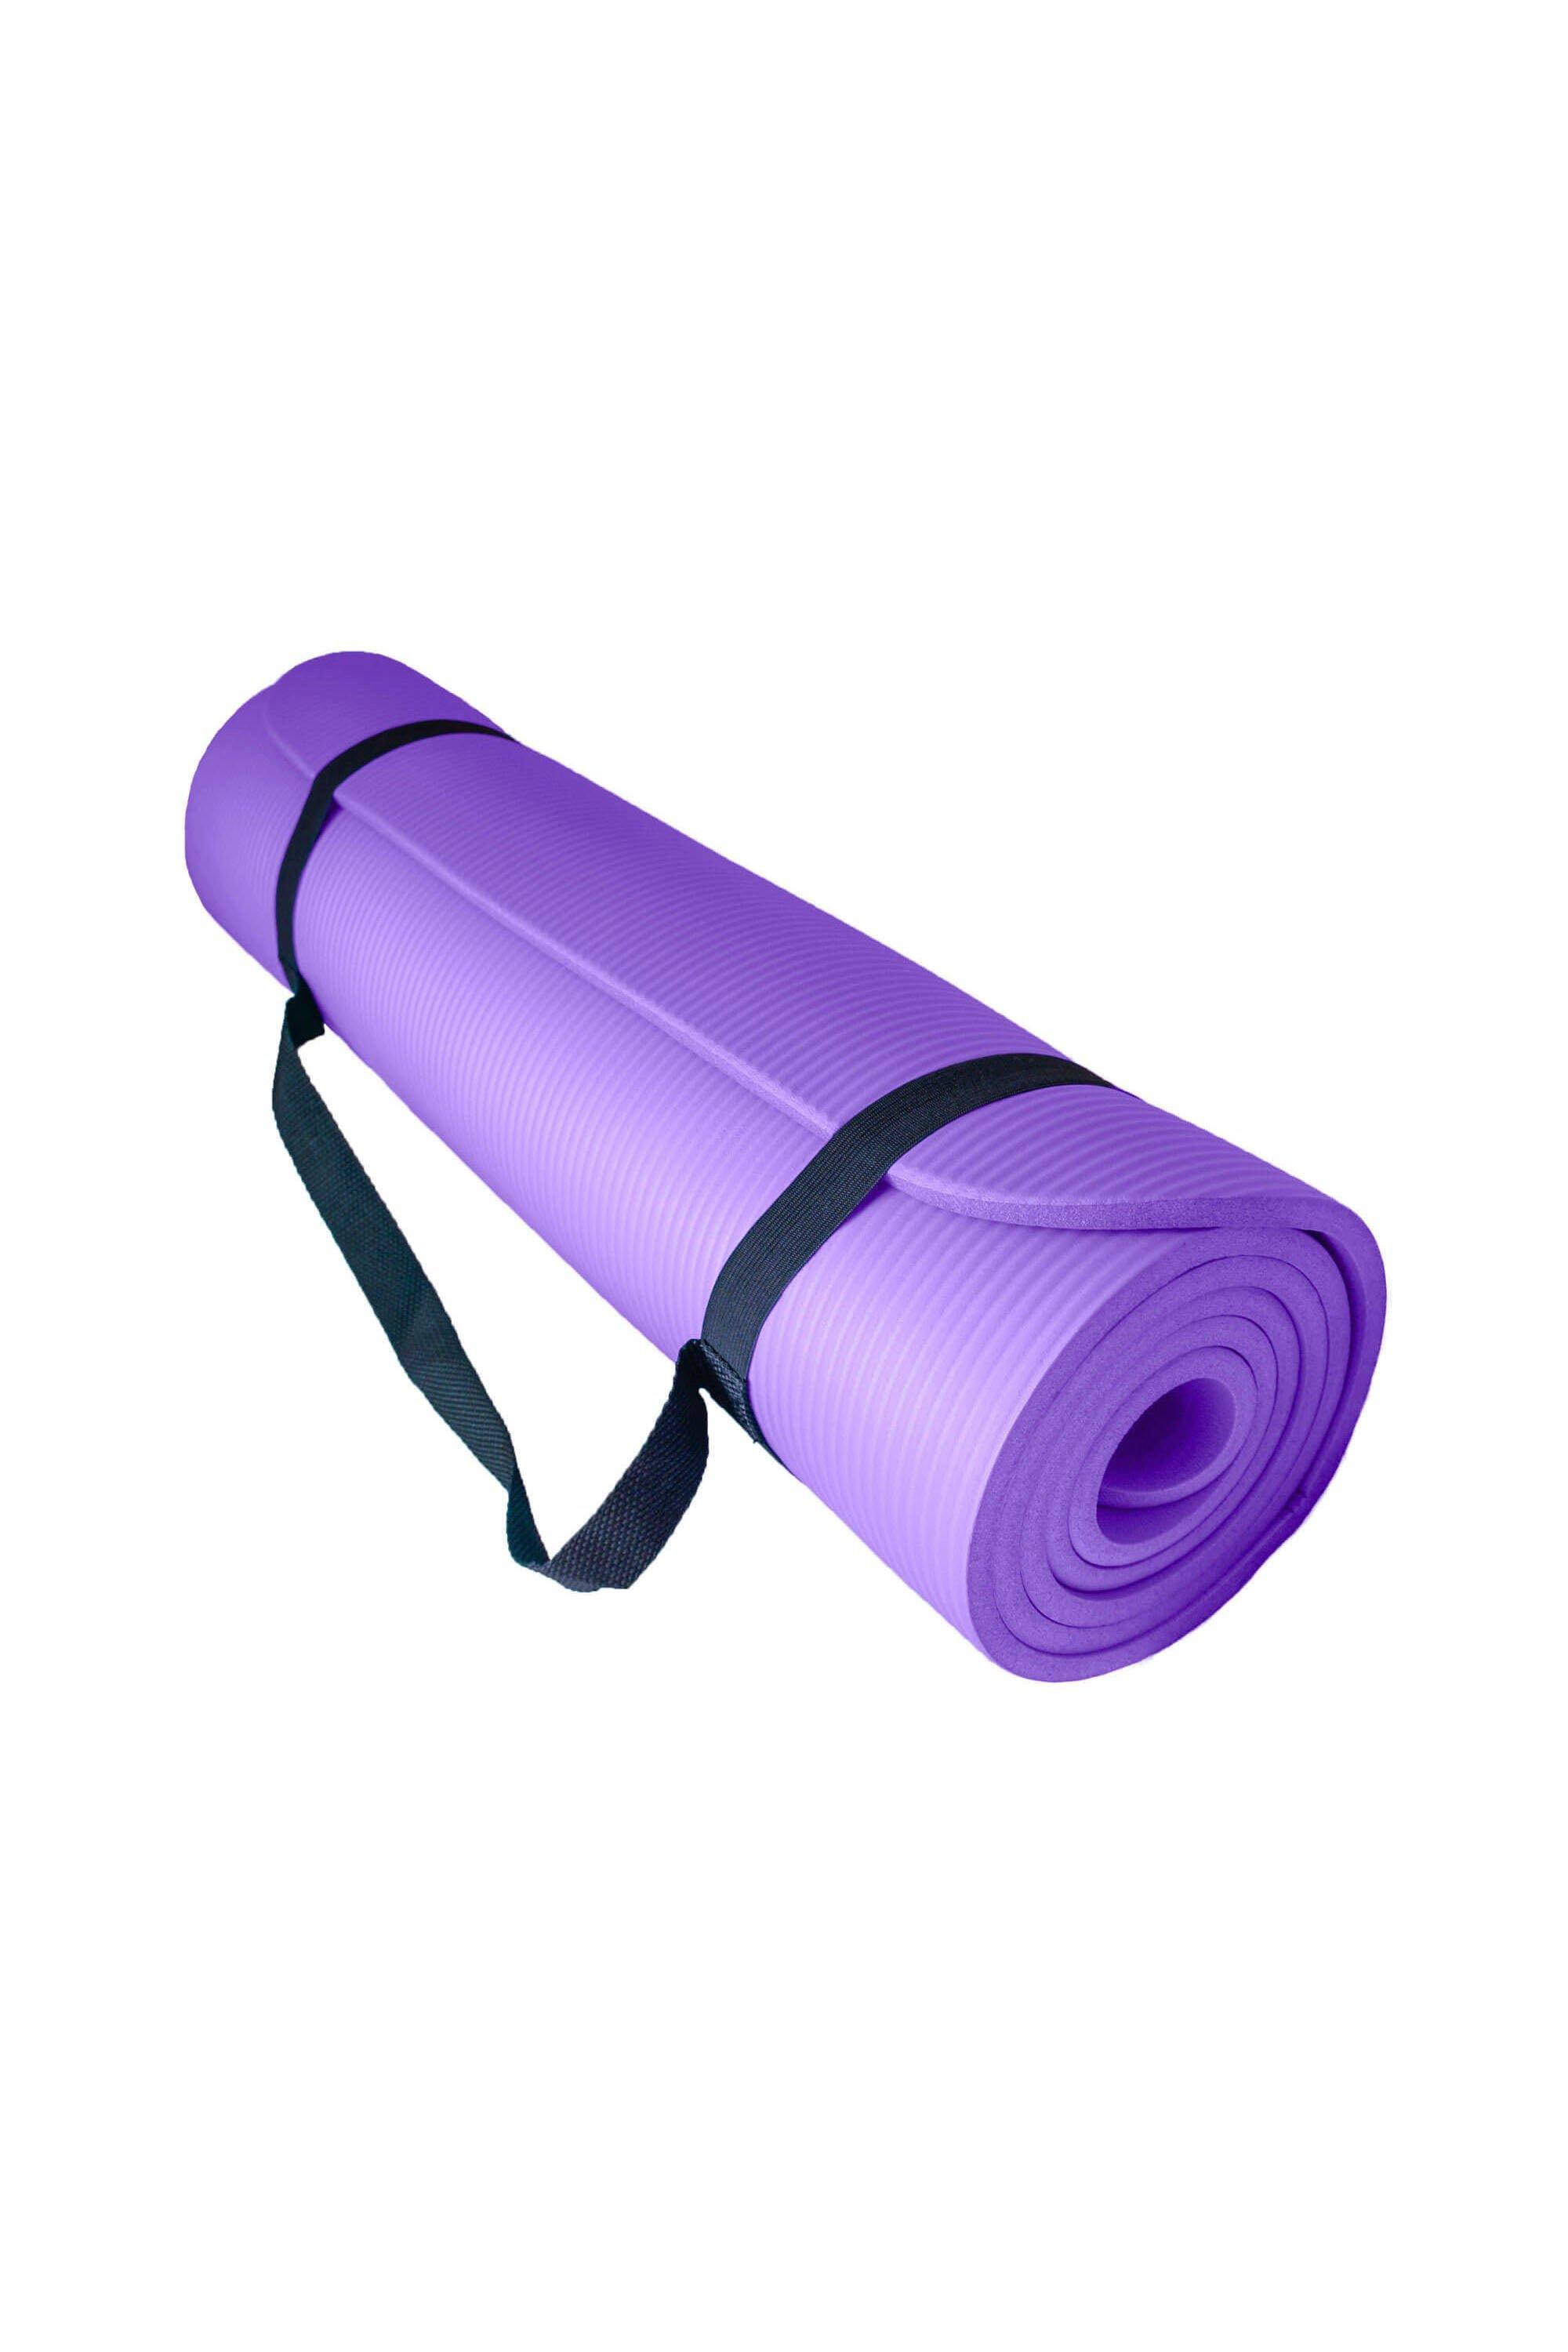 Мягкий коврик для упражнений для йоги с воздушным потоком 10 мм Azure, фиолетовый эспандер для йоги пилатеса женский эспандер для упражнений для дома